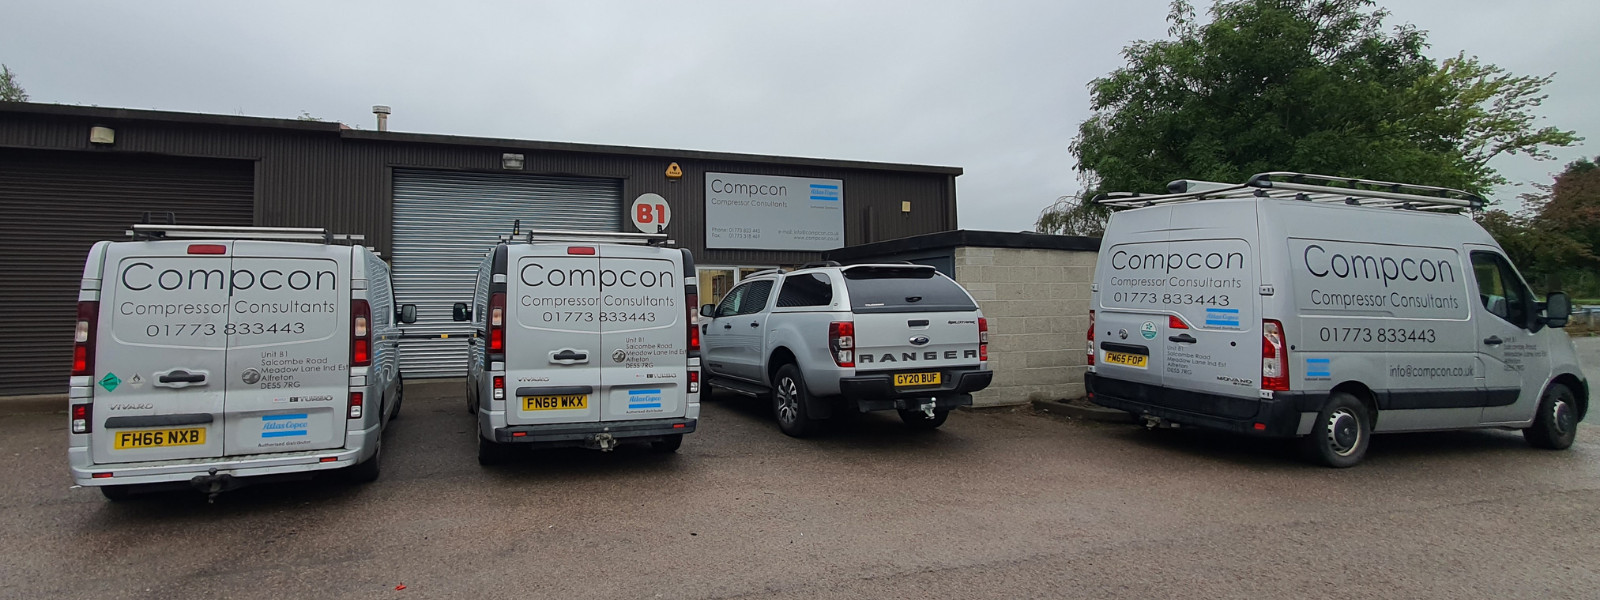 Pennine Pneumatic Services Ltd acquires Compcon Lt...